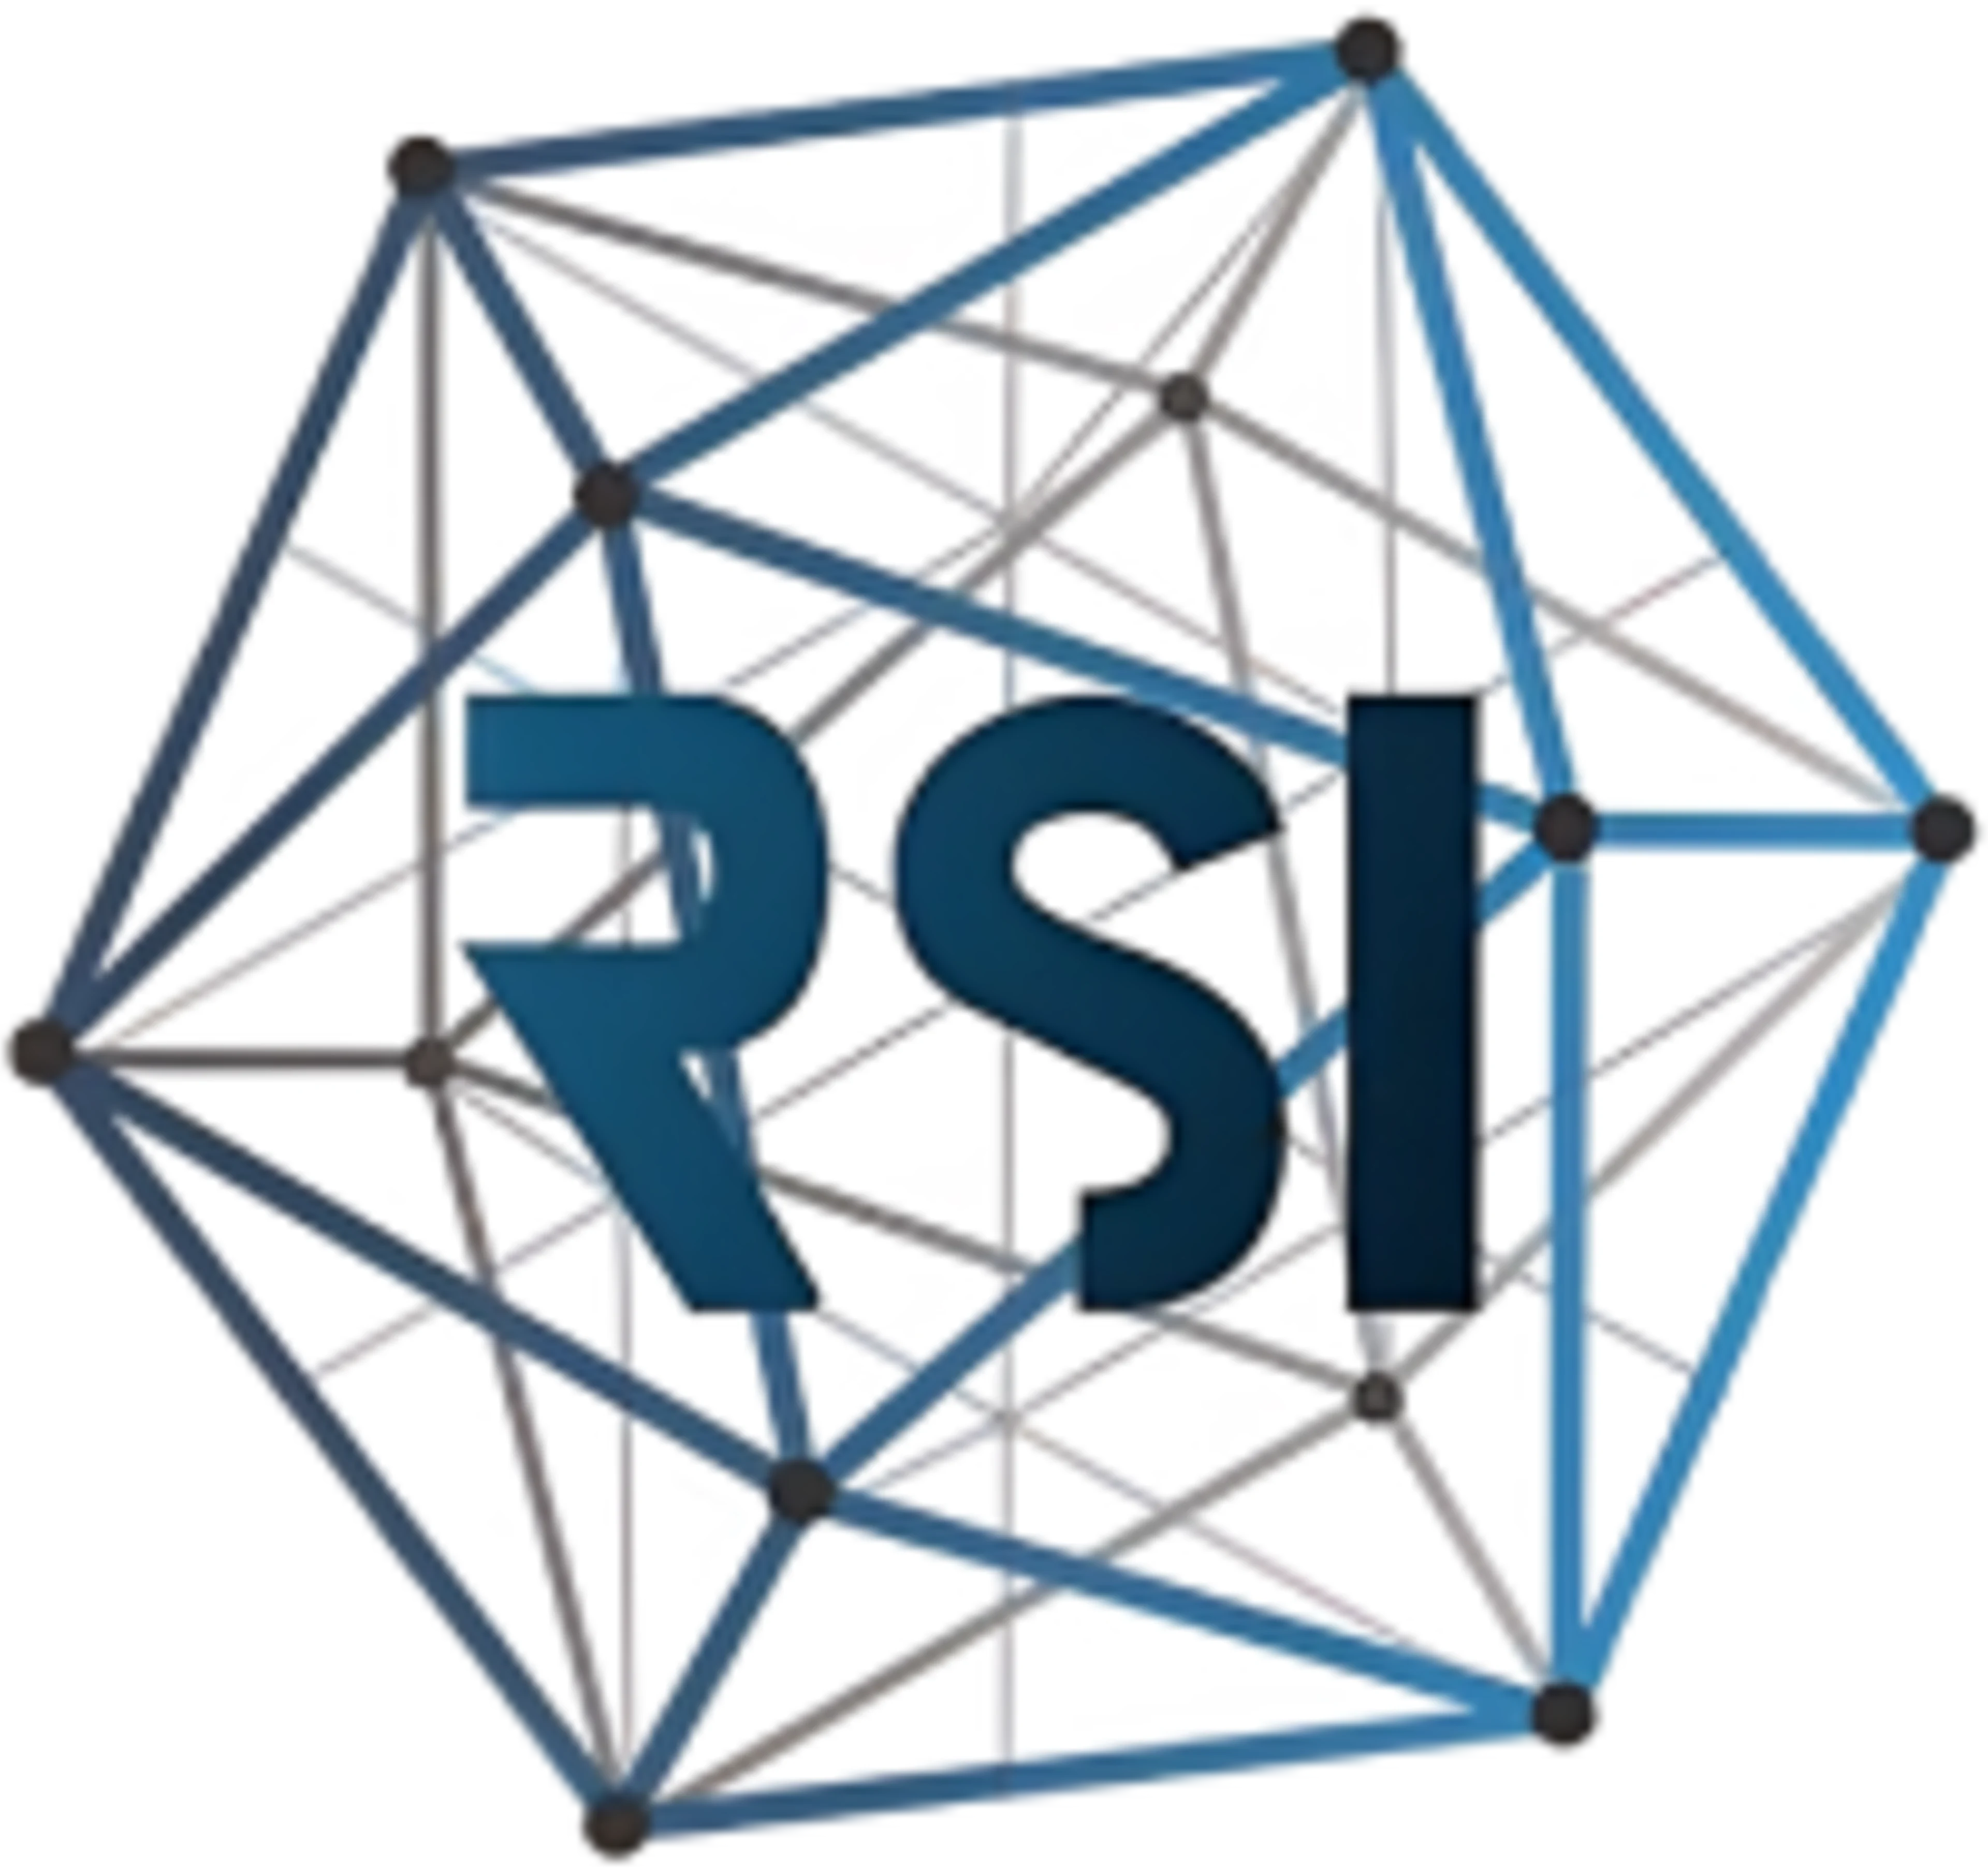 RSI-logo